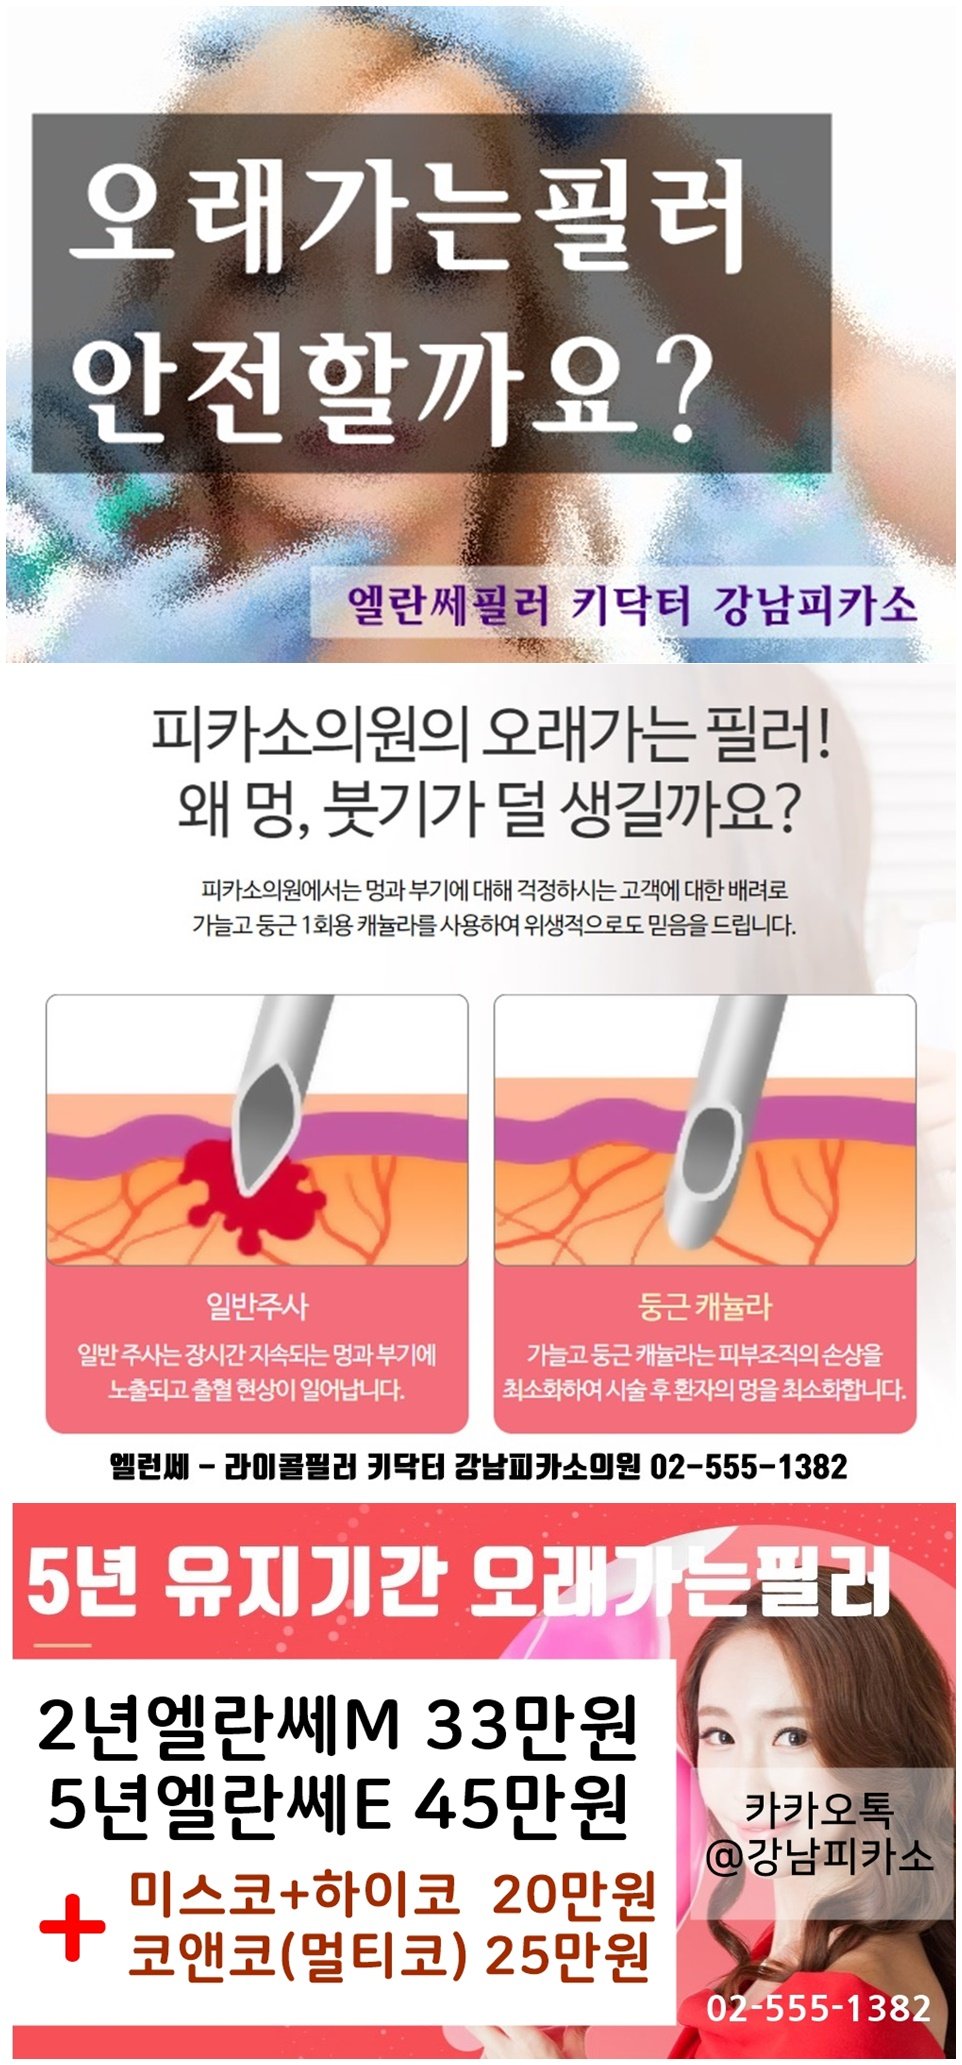 강남역 피부과 액자필러 리뷰 / 엘란세 유지기간, 부작용